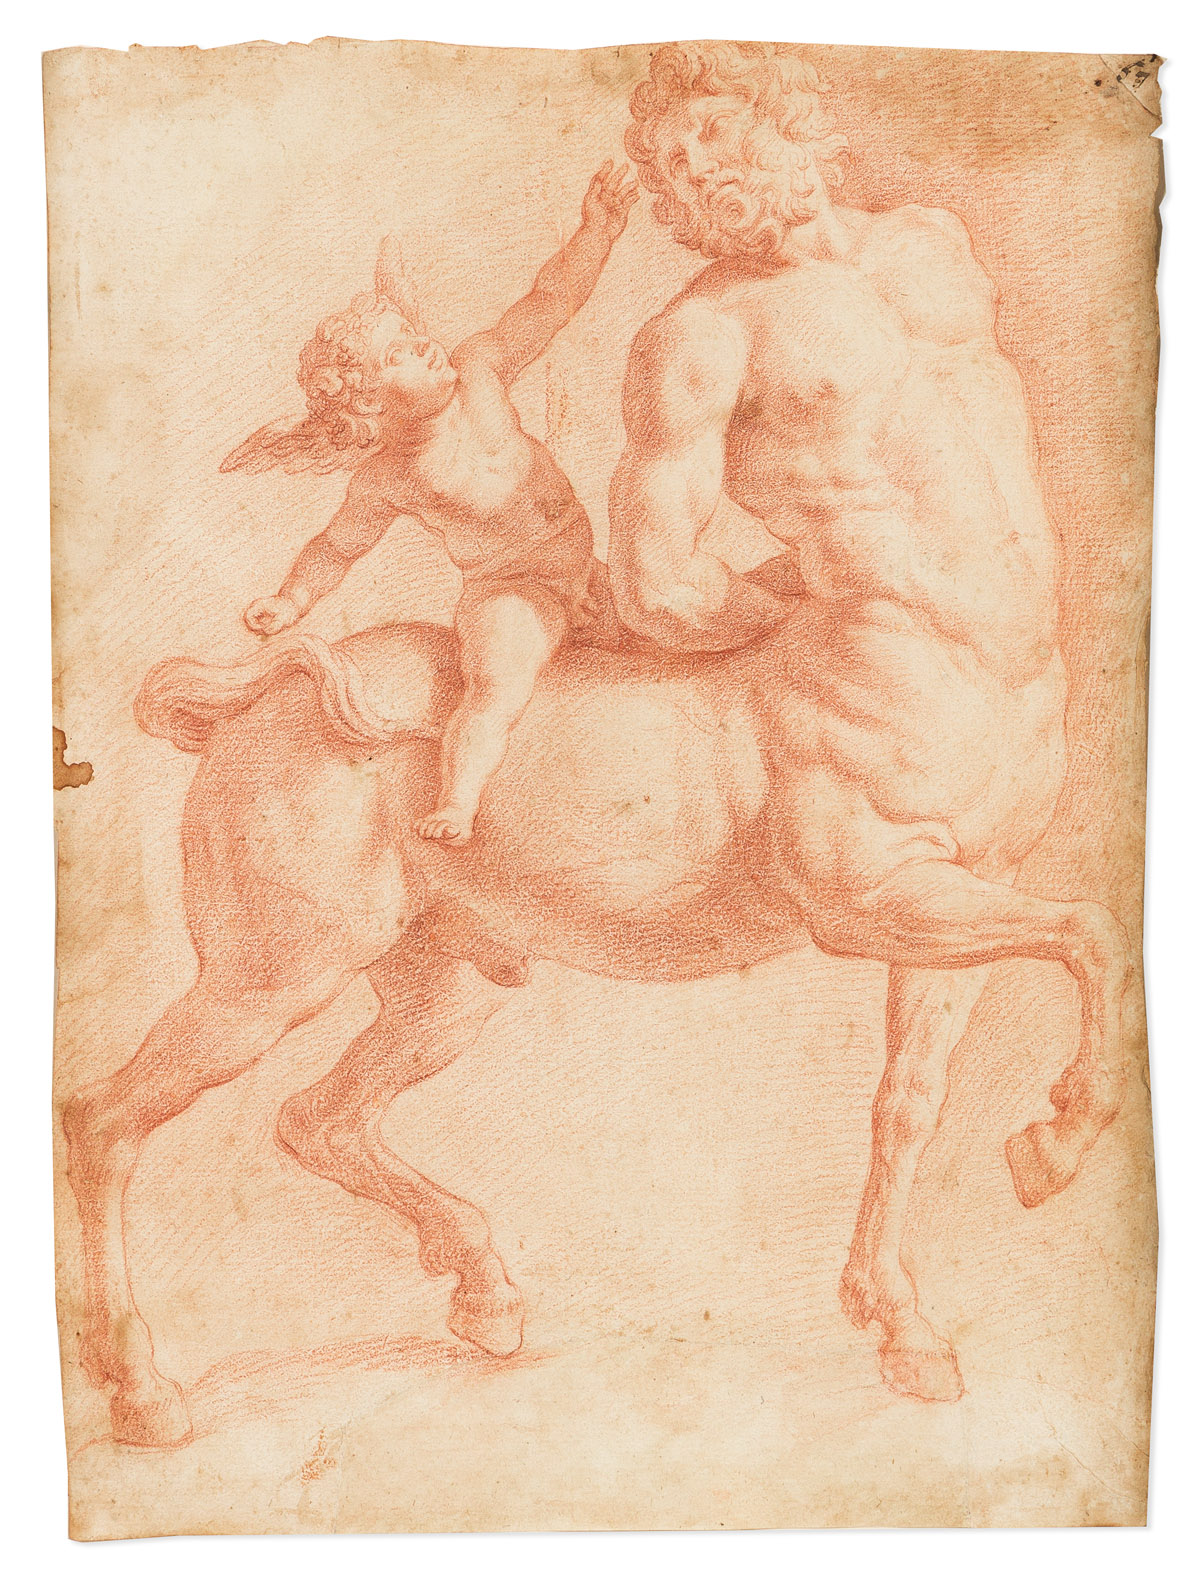 ITALIAN SCHOOL, 18TH CENTURY A Centaur Teased by Eros.